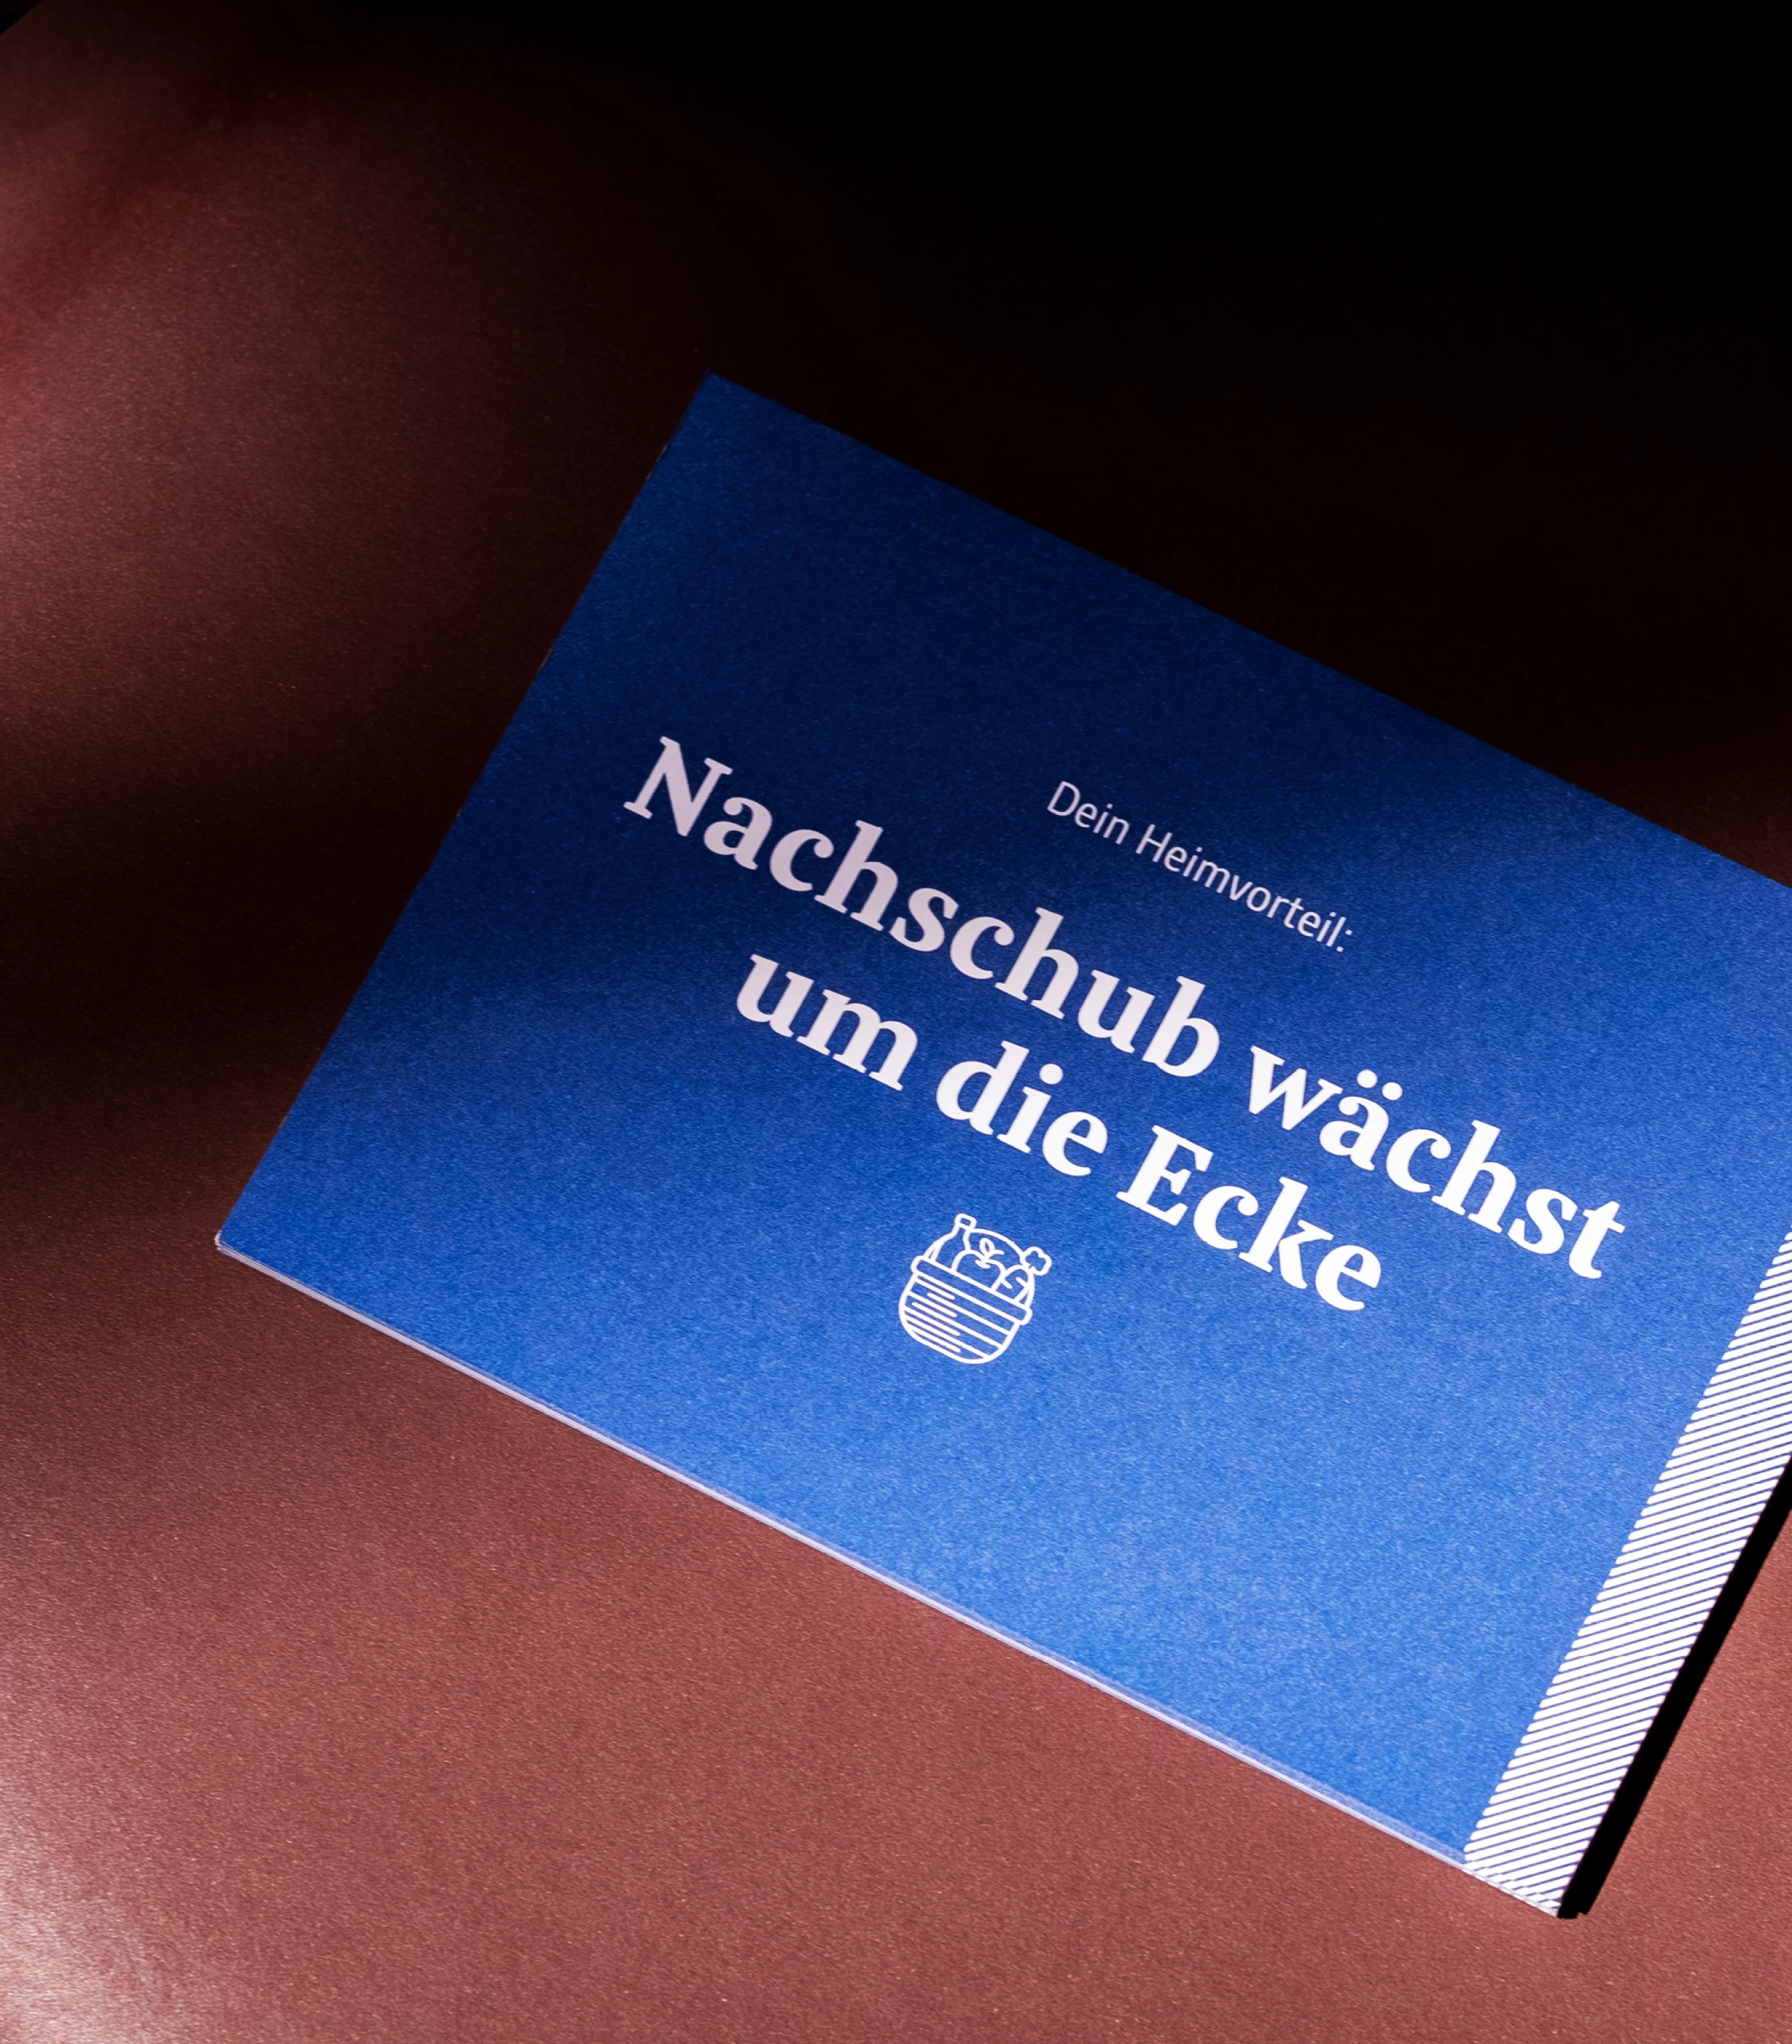 15-bauernbund-campaign-postcard-w13.jpg